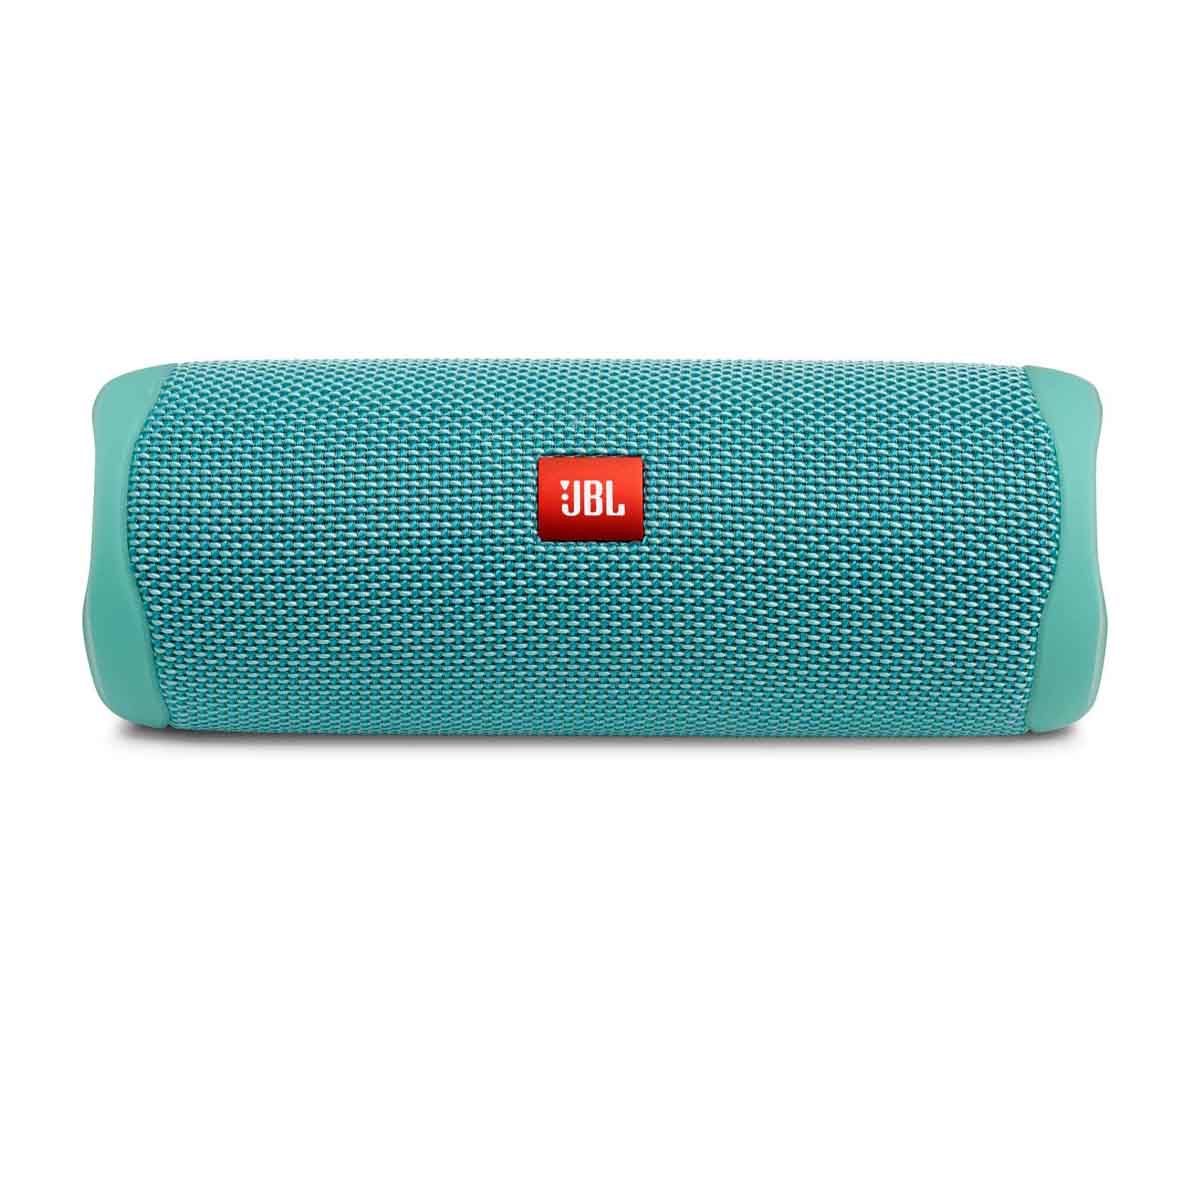 JBL FLIP 5 Waterproof Portable Bluetooth Speaker in teal blue